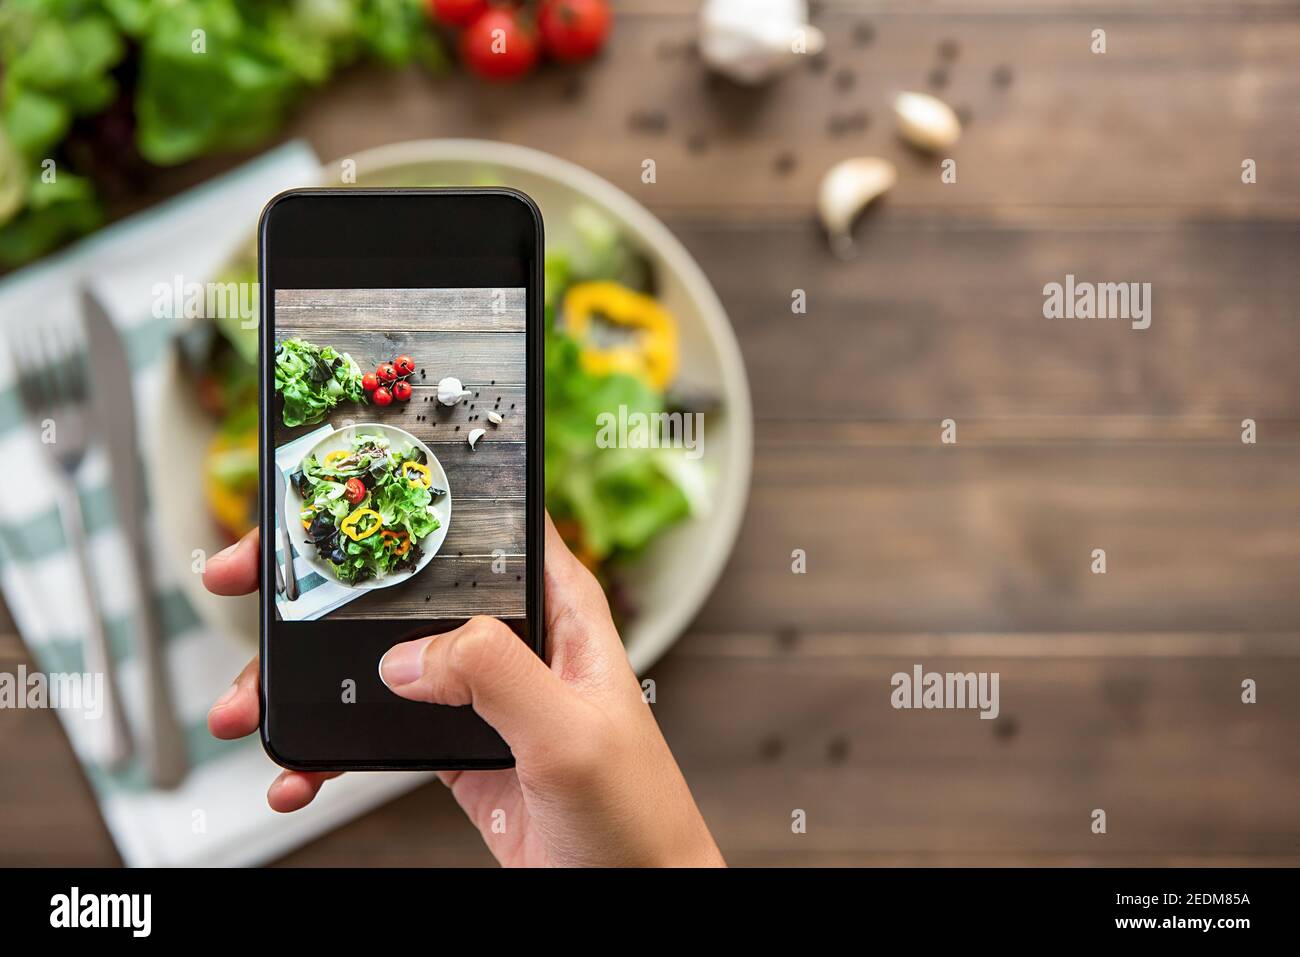 Food-Blogger mit Smartphone Foto von schönen Mix frisch Grüner Salat auf Holztisch zum Teilen in den sozialen Medien Stockfoto